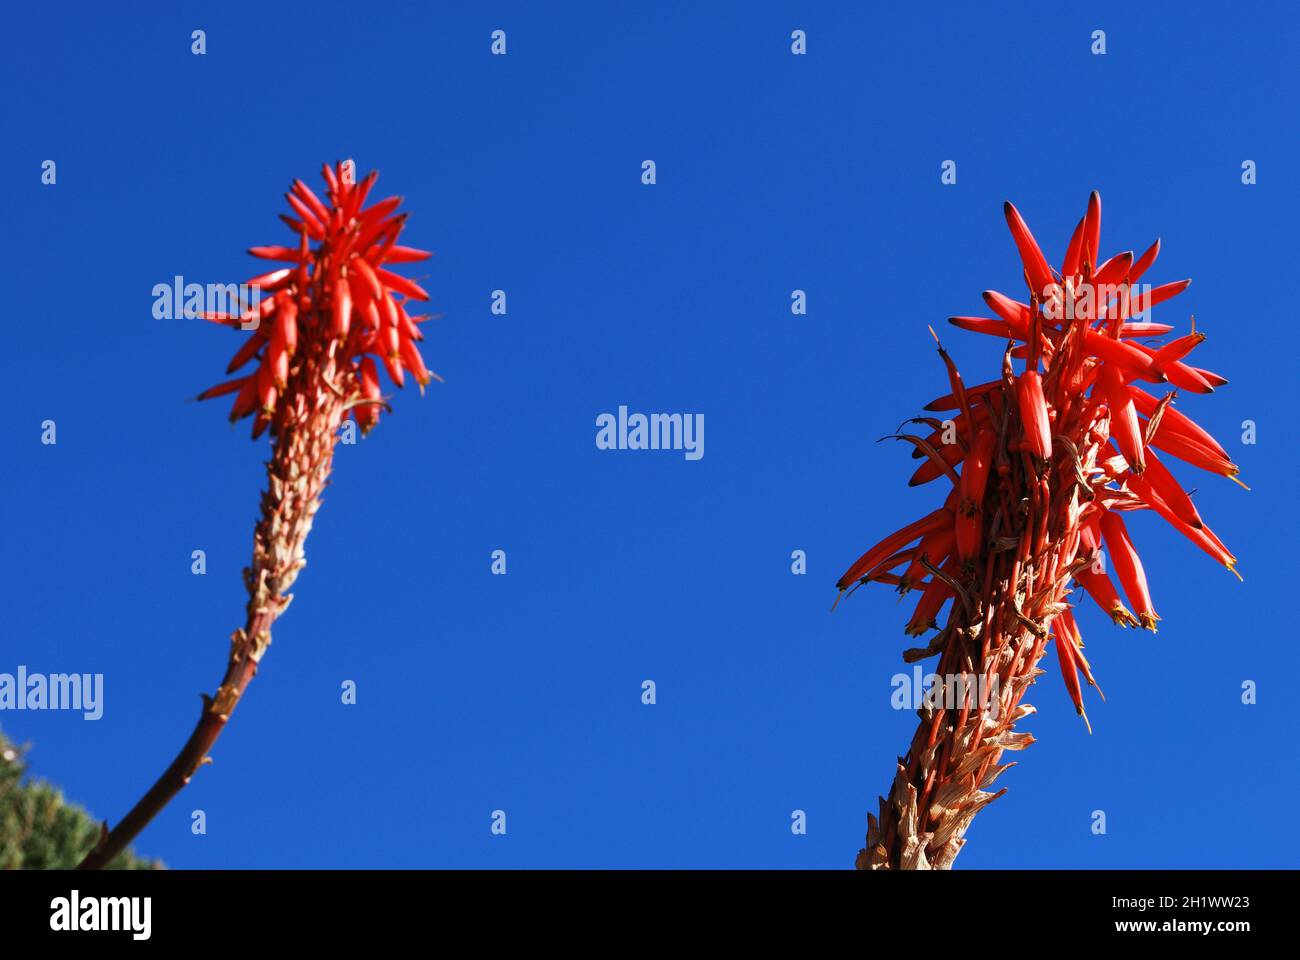 Aloe arborescens Variegata en pleine floraison contre un ciel bleu, Miraflores, Costa del sol, Malaga province, Andalousie,Espagne, Europe Banque D'Images